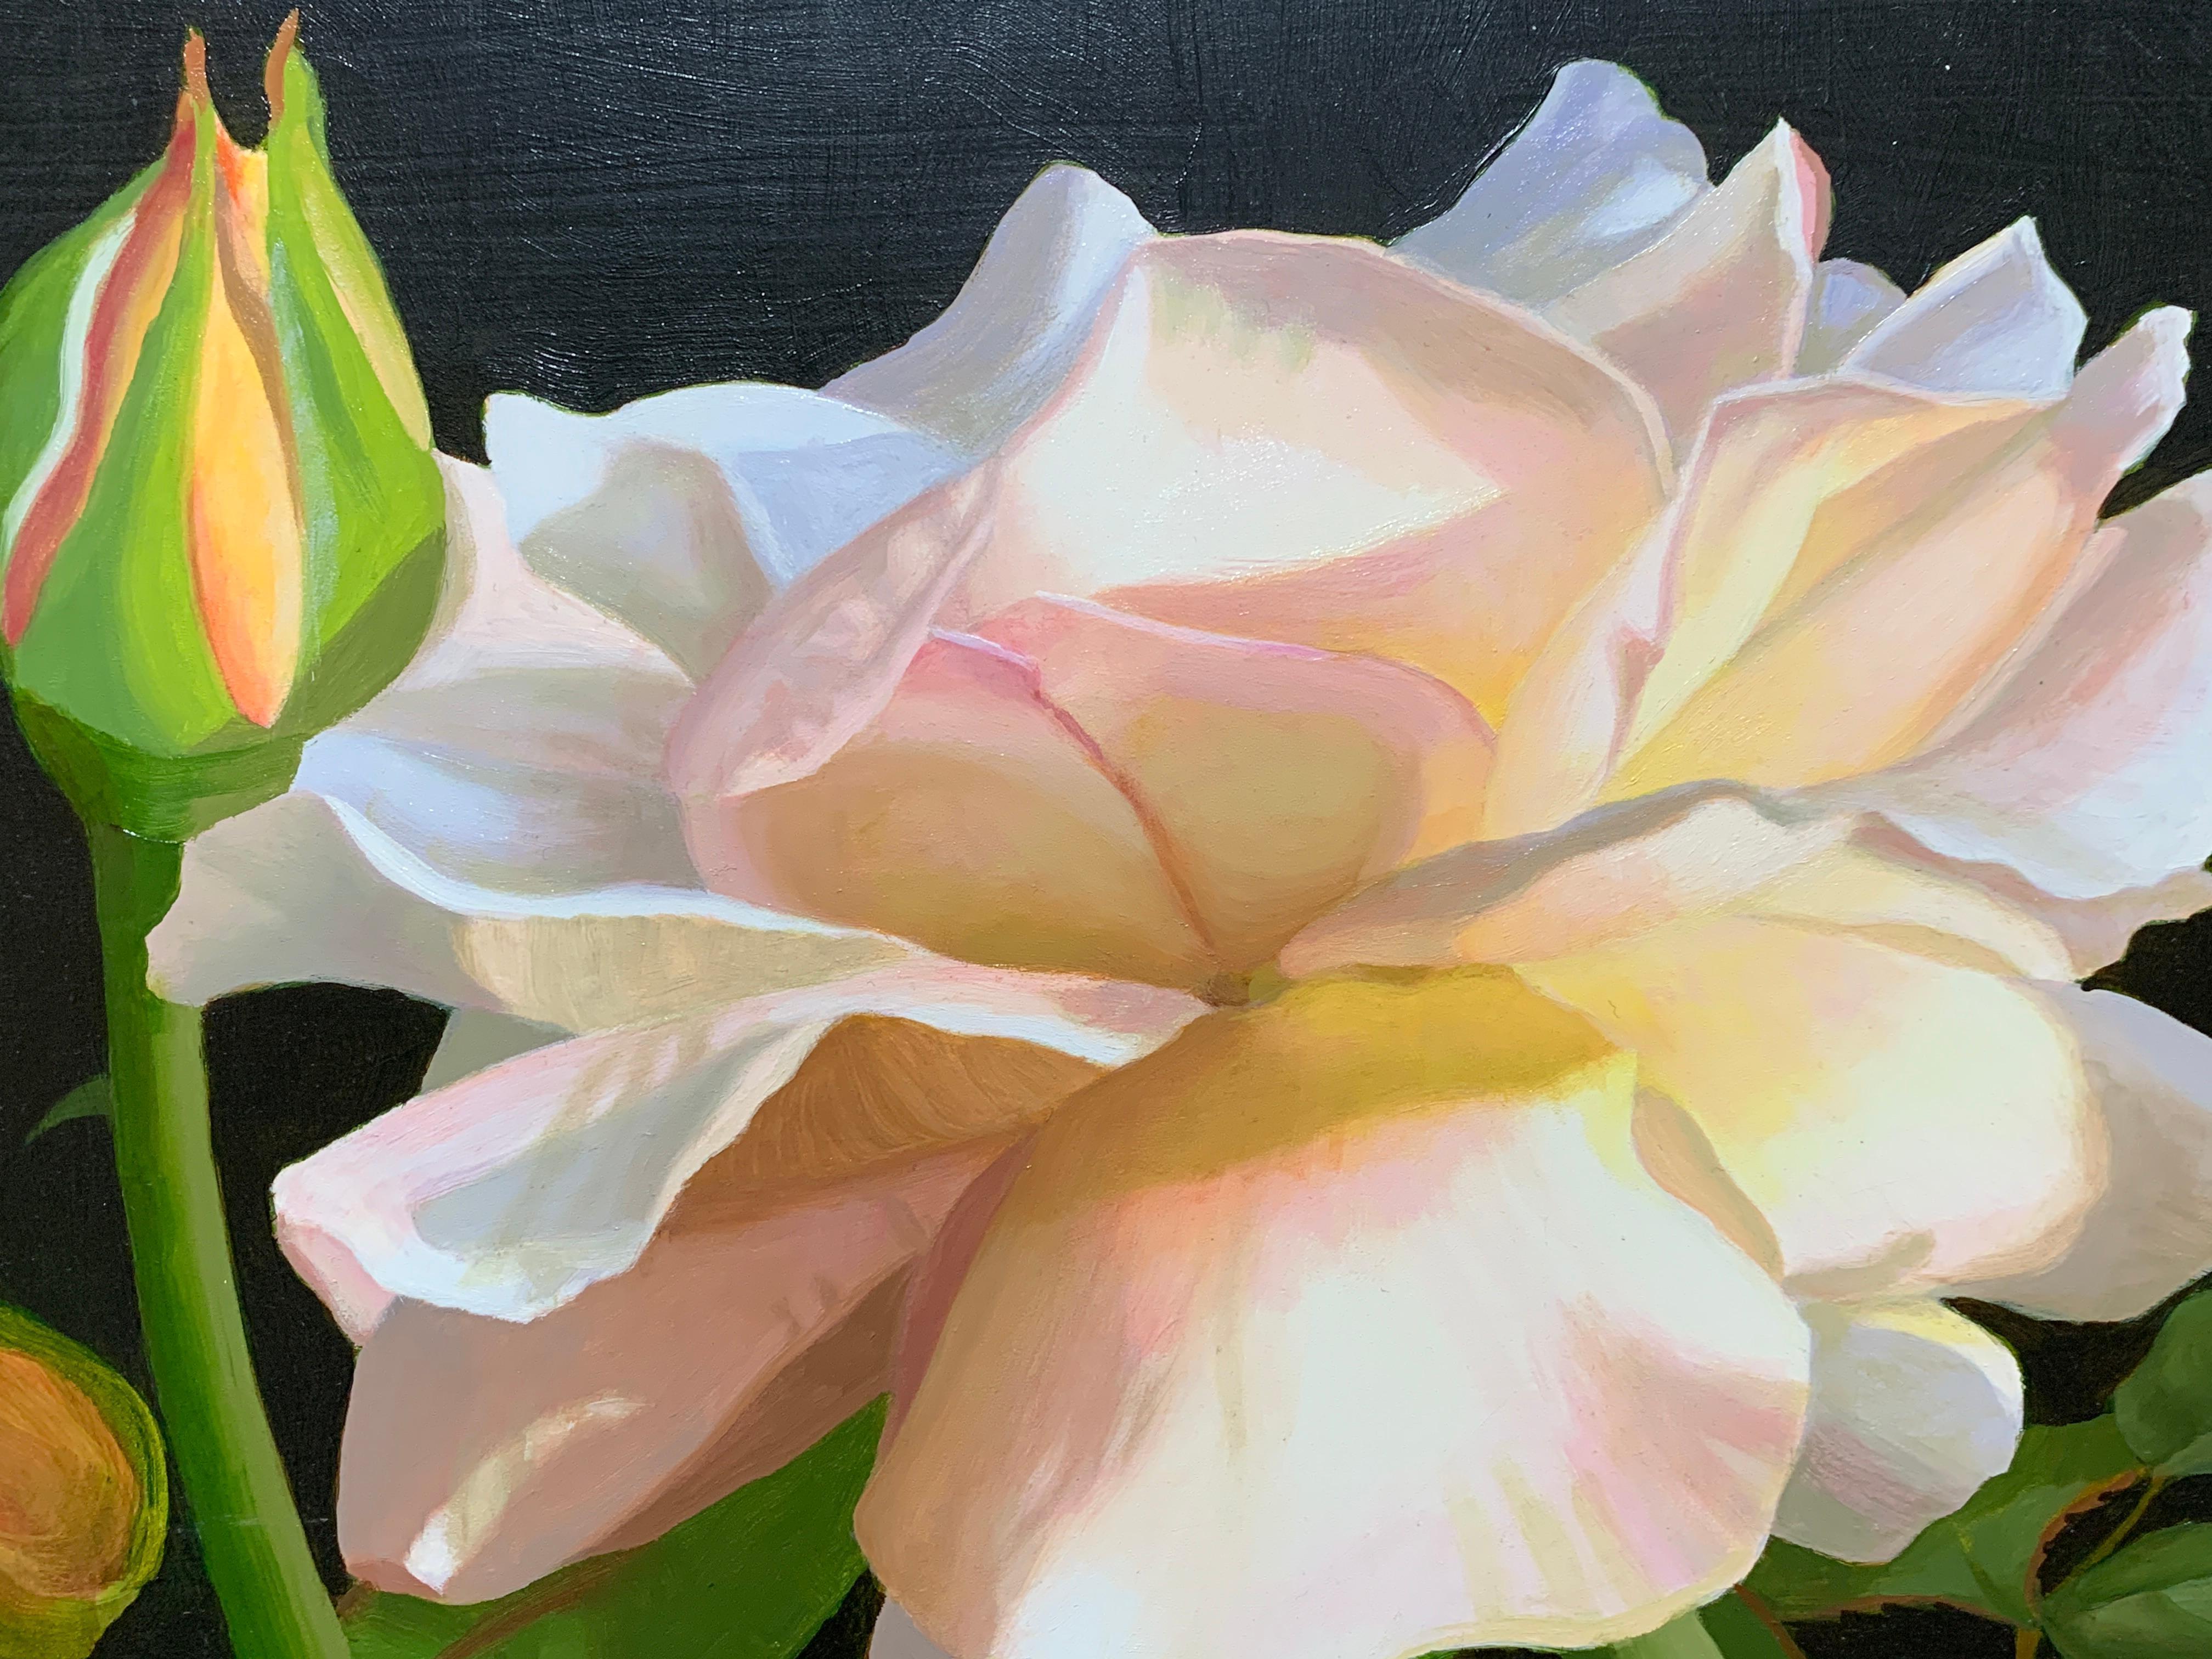 Amerikanisches Realismus-Stillleben mit rosa und gelben Rosen – Painting von Elizabeth Rickert